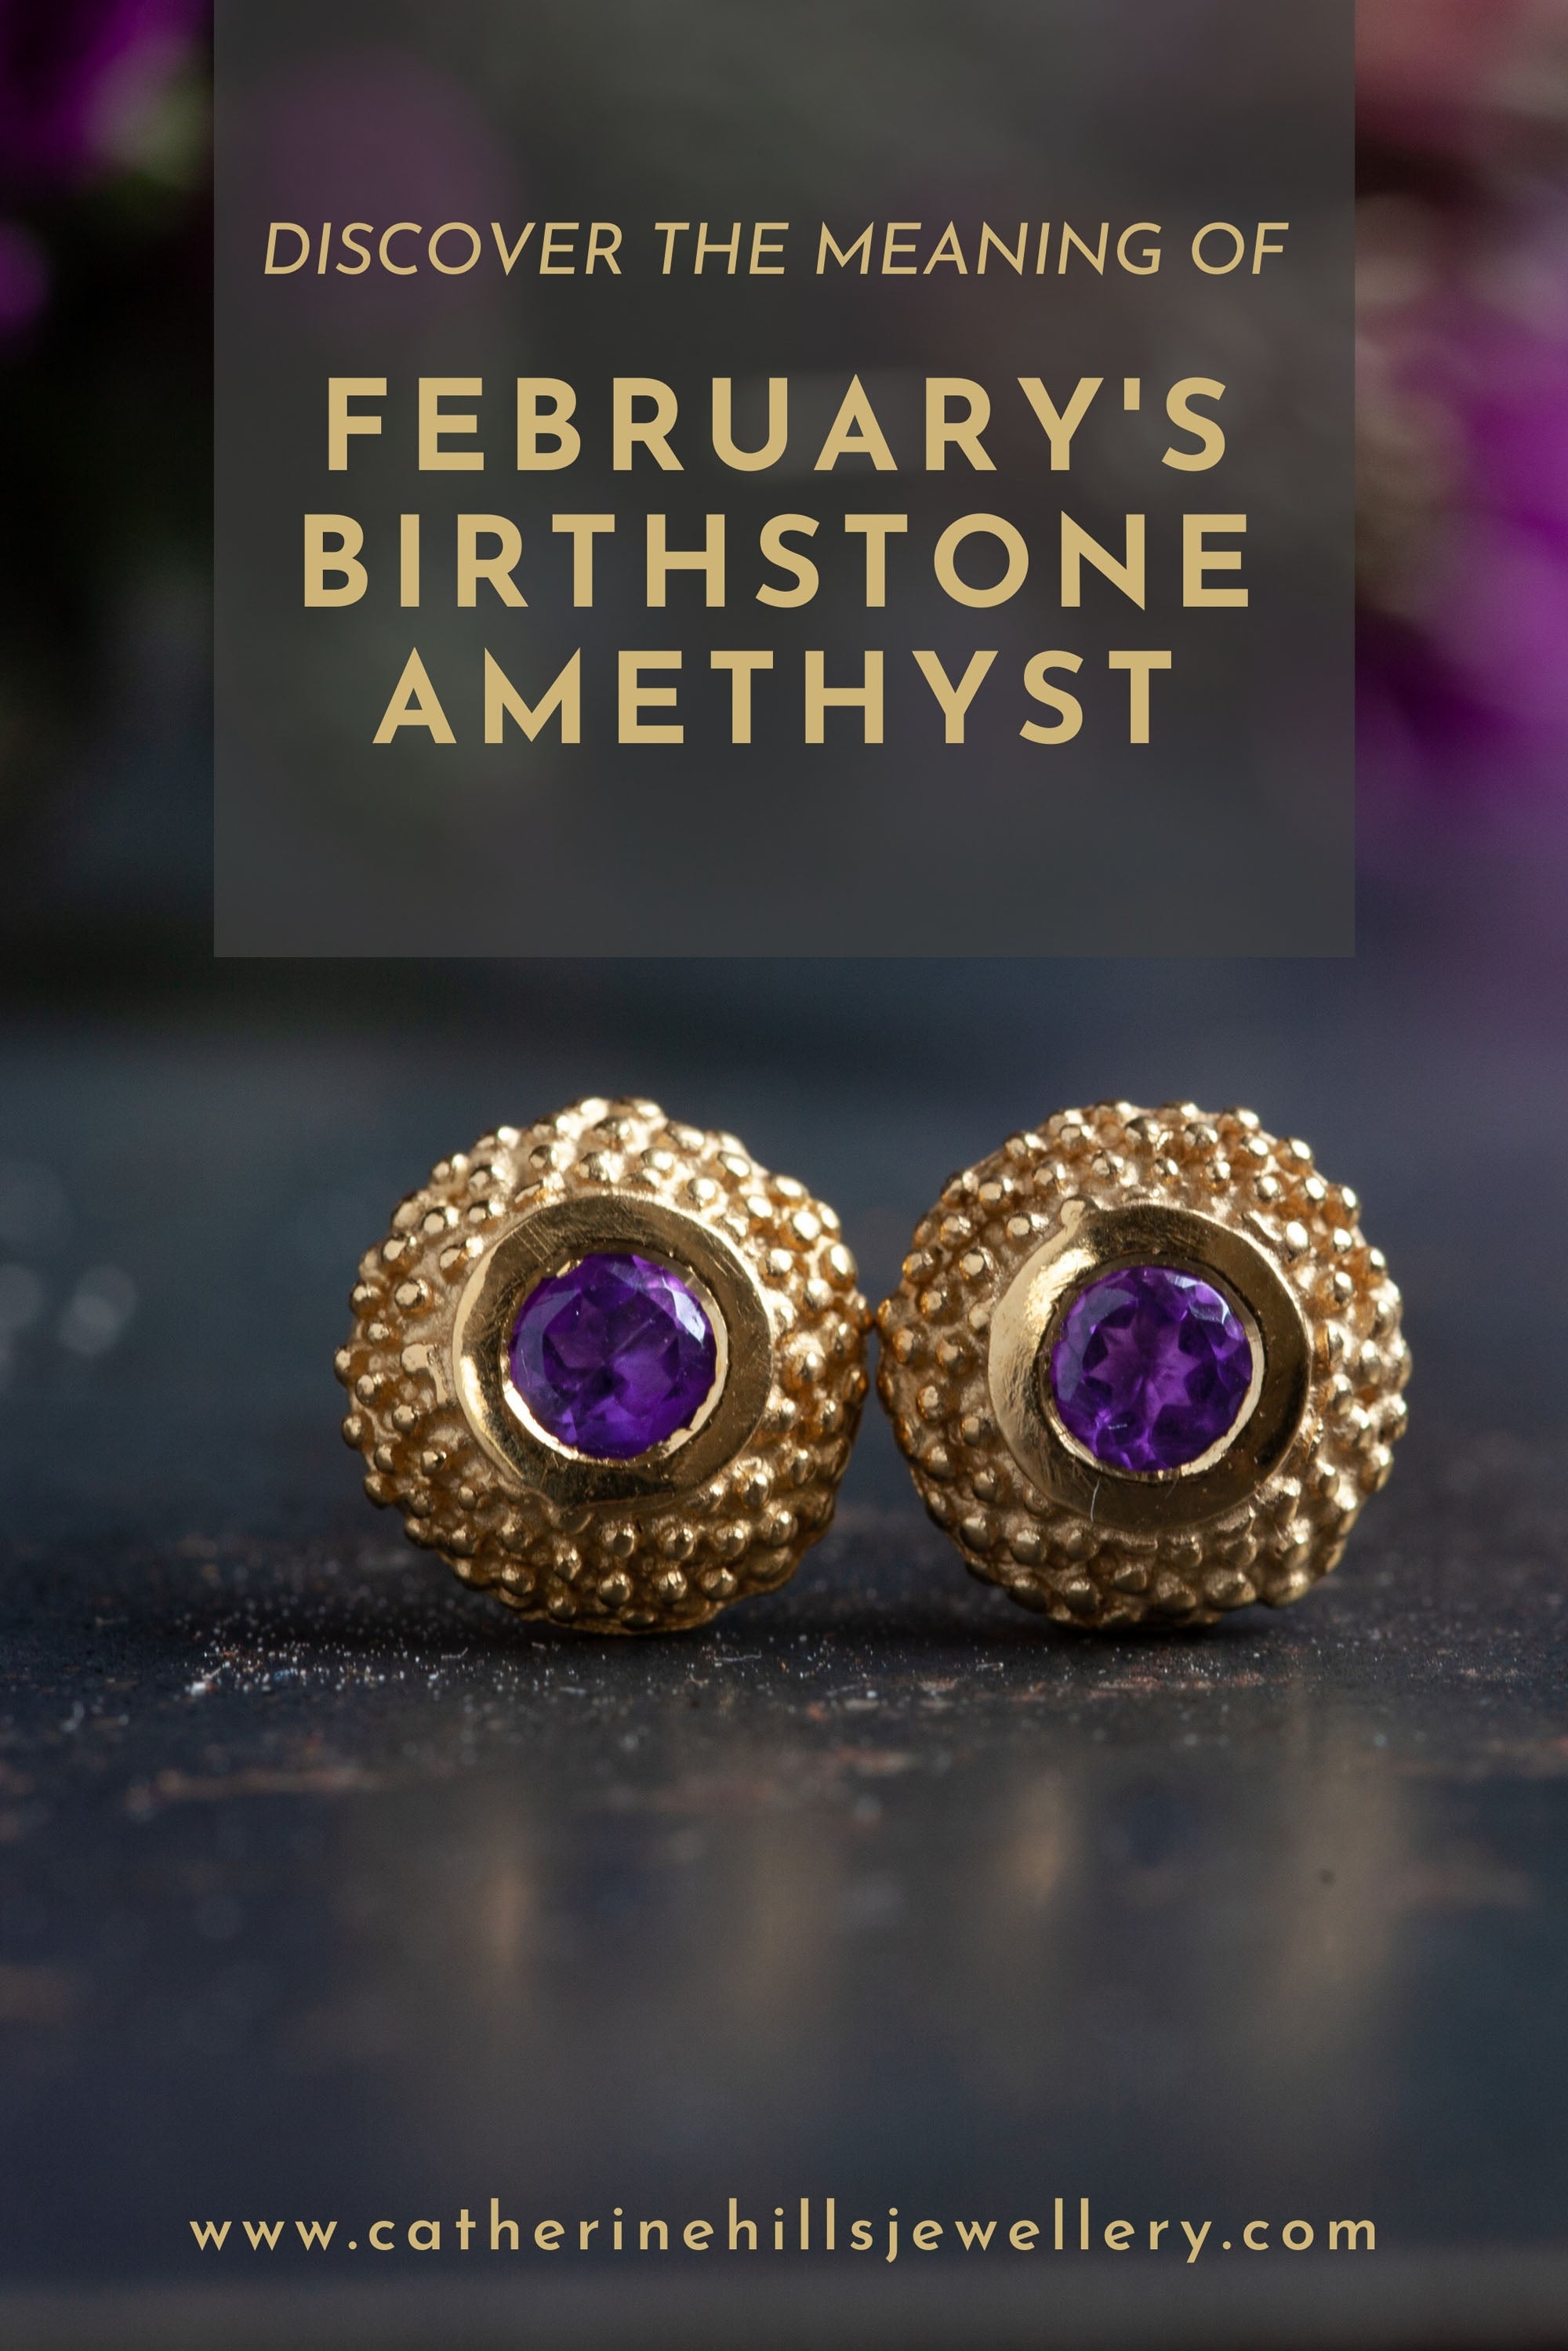 Februrary's birthstone amethyst